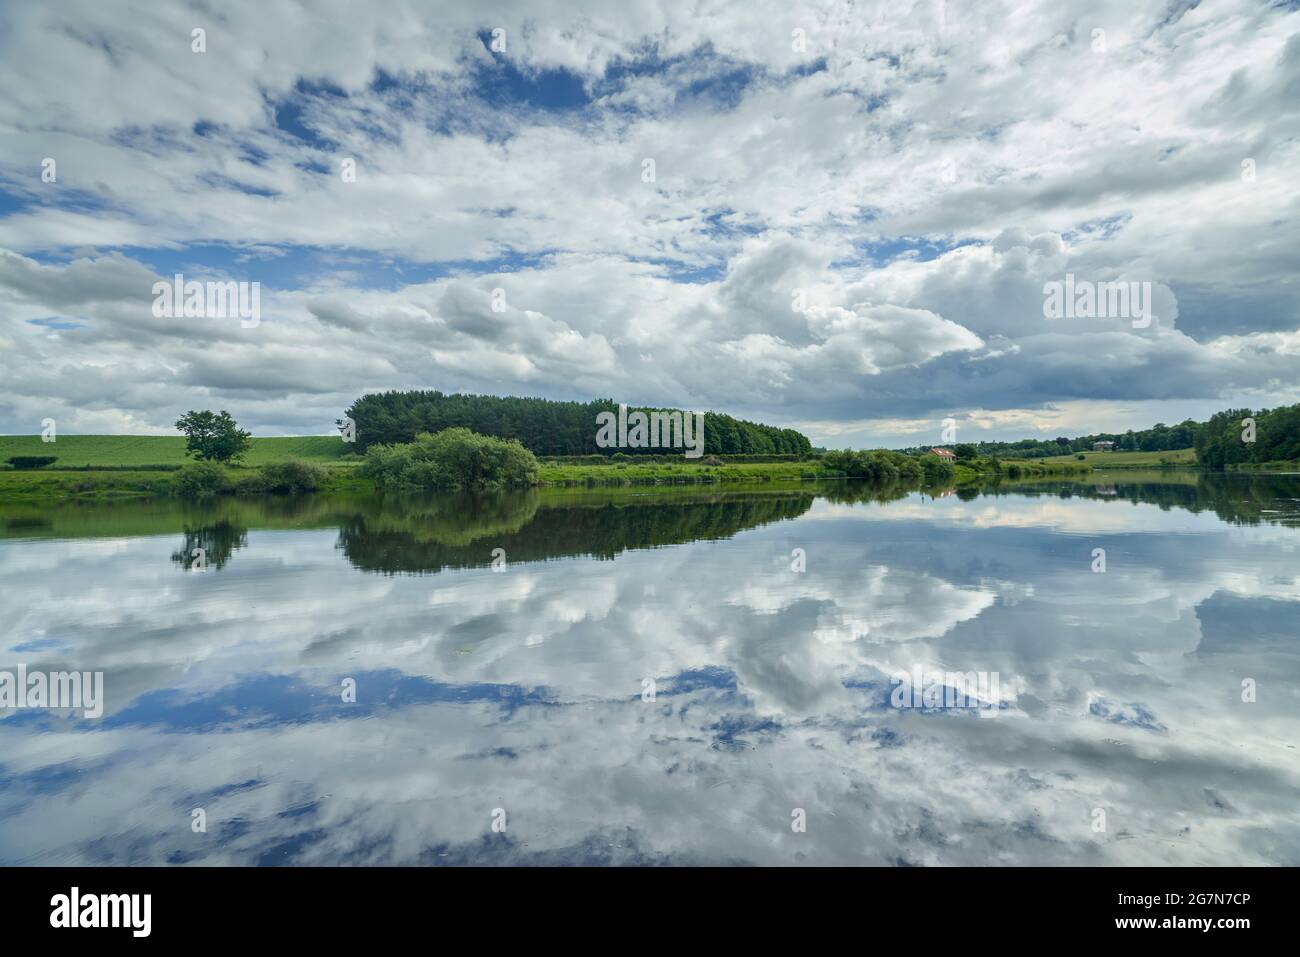 Reflet spectaculaire du ciel dans la rivière tweed lors d'une journée d'été ensoleillée dans les frontières écossaises. Banque D'Images